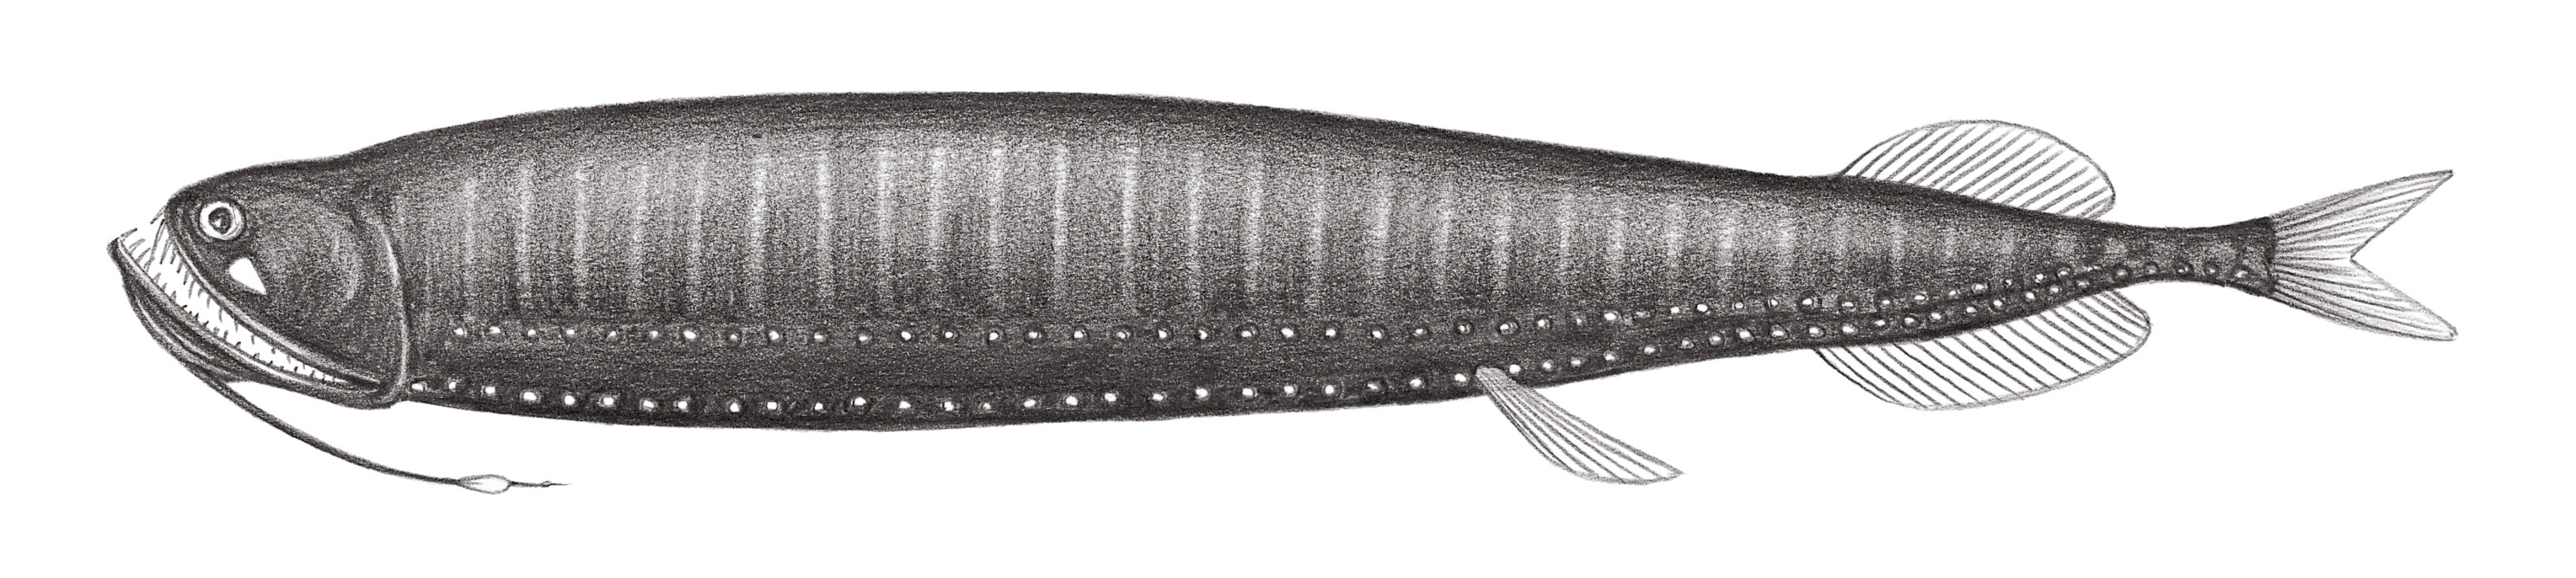 450.	白鰭光電魚 Photonectes albipennis (Döderlein, 1882)